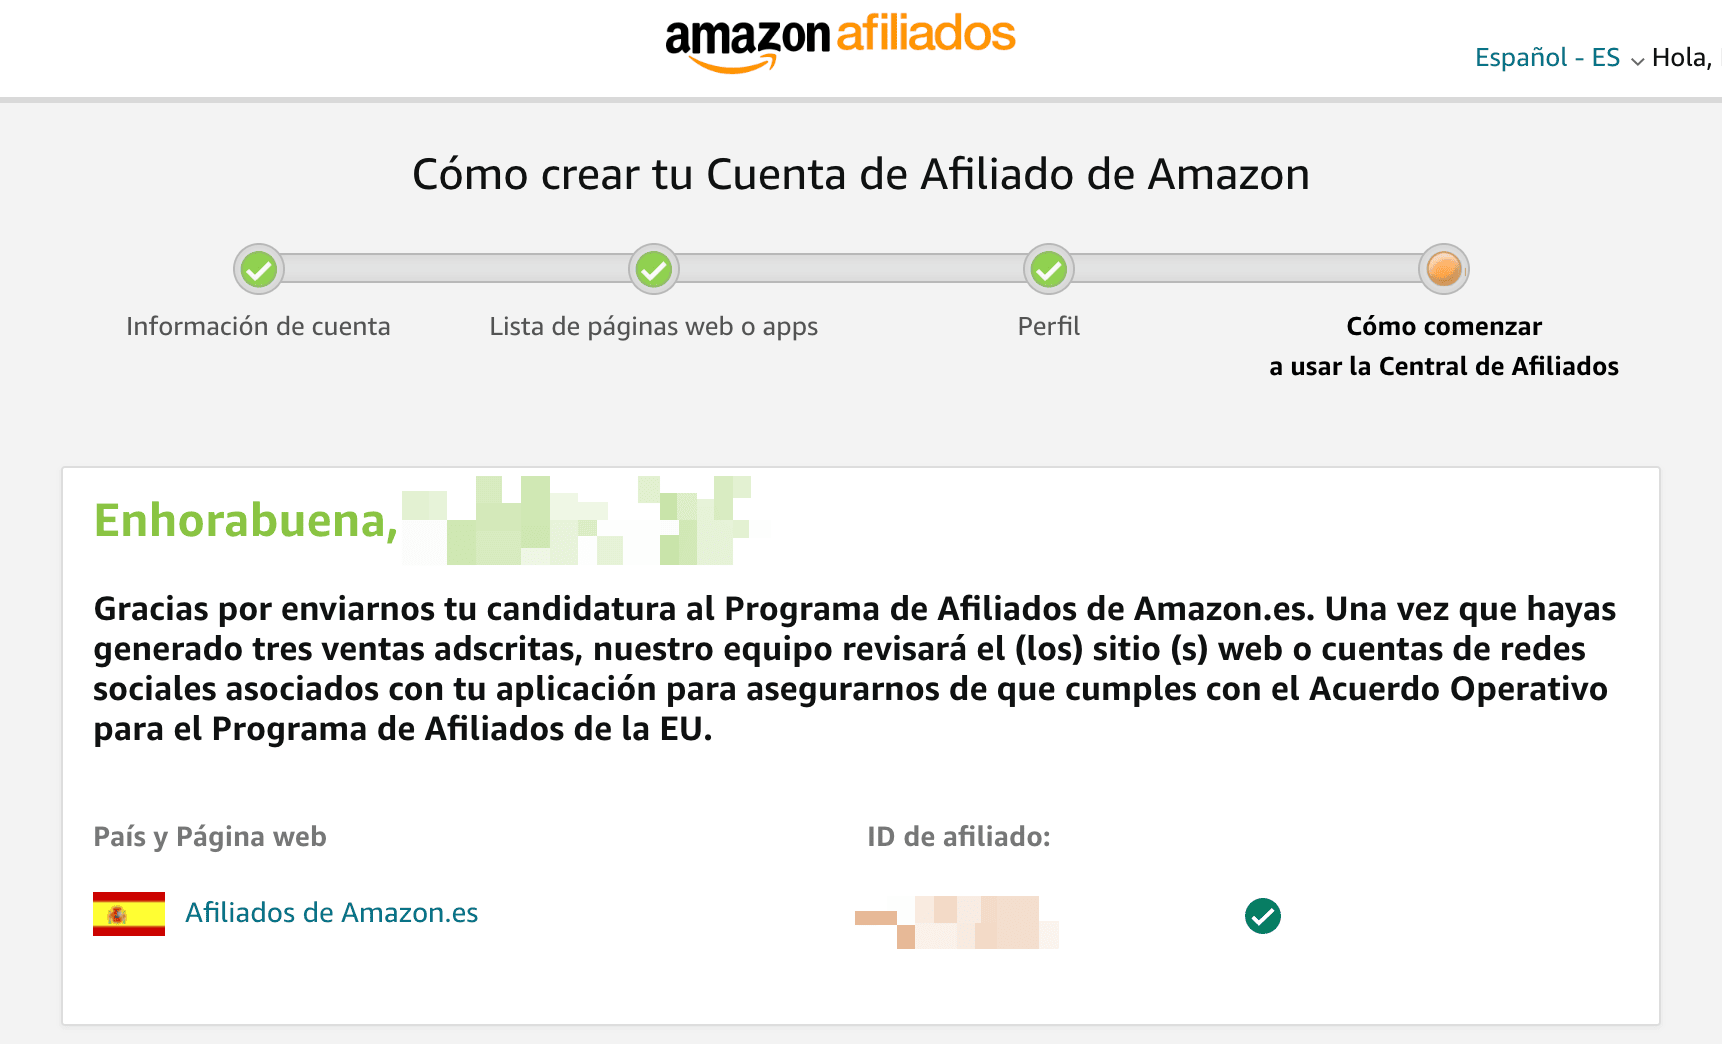 Cuenta de afiliado de Amazon creado con éxito